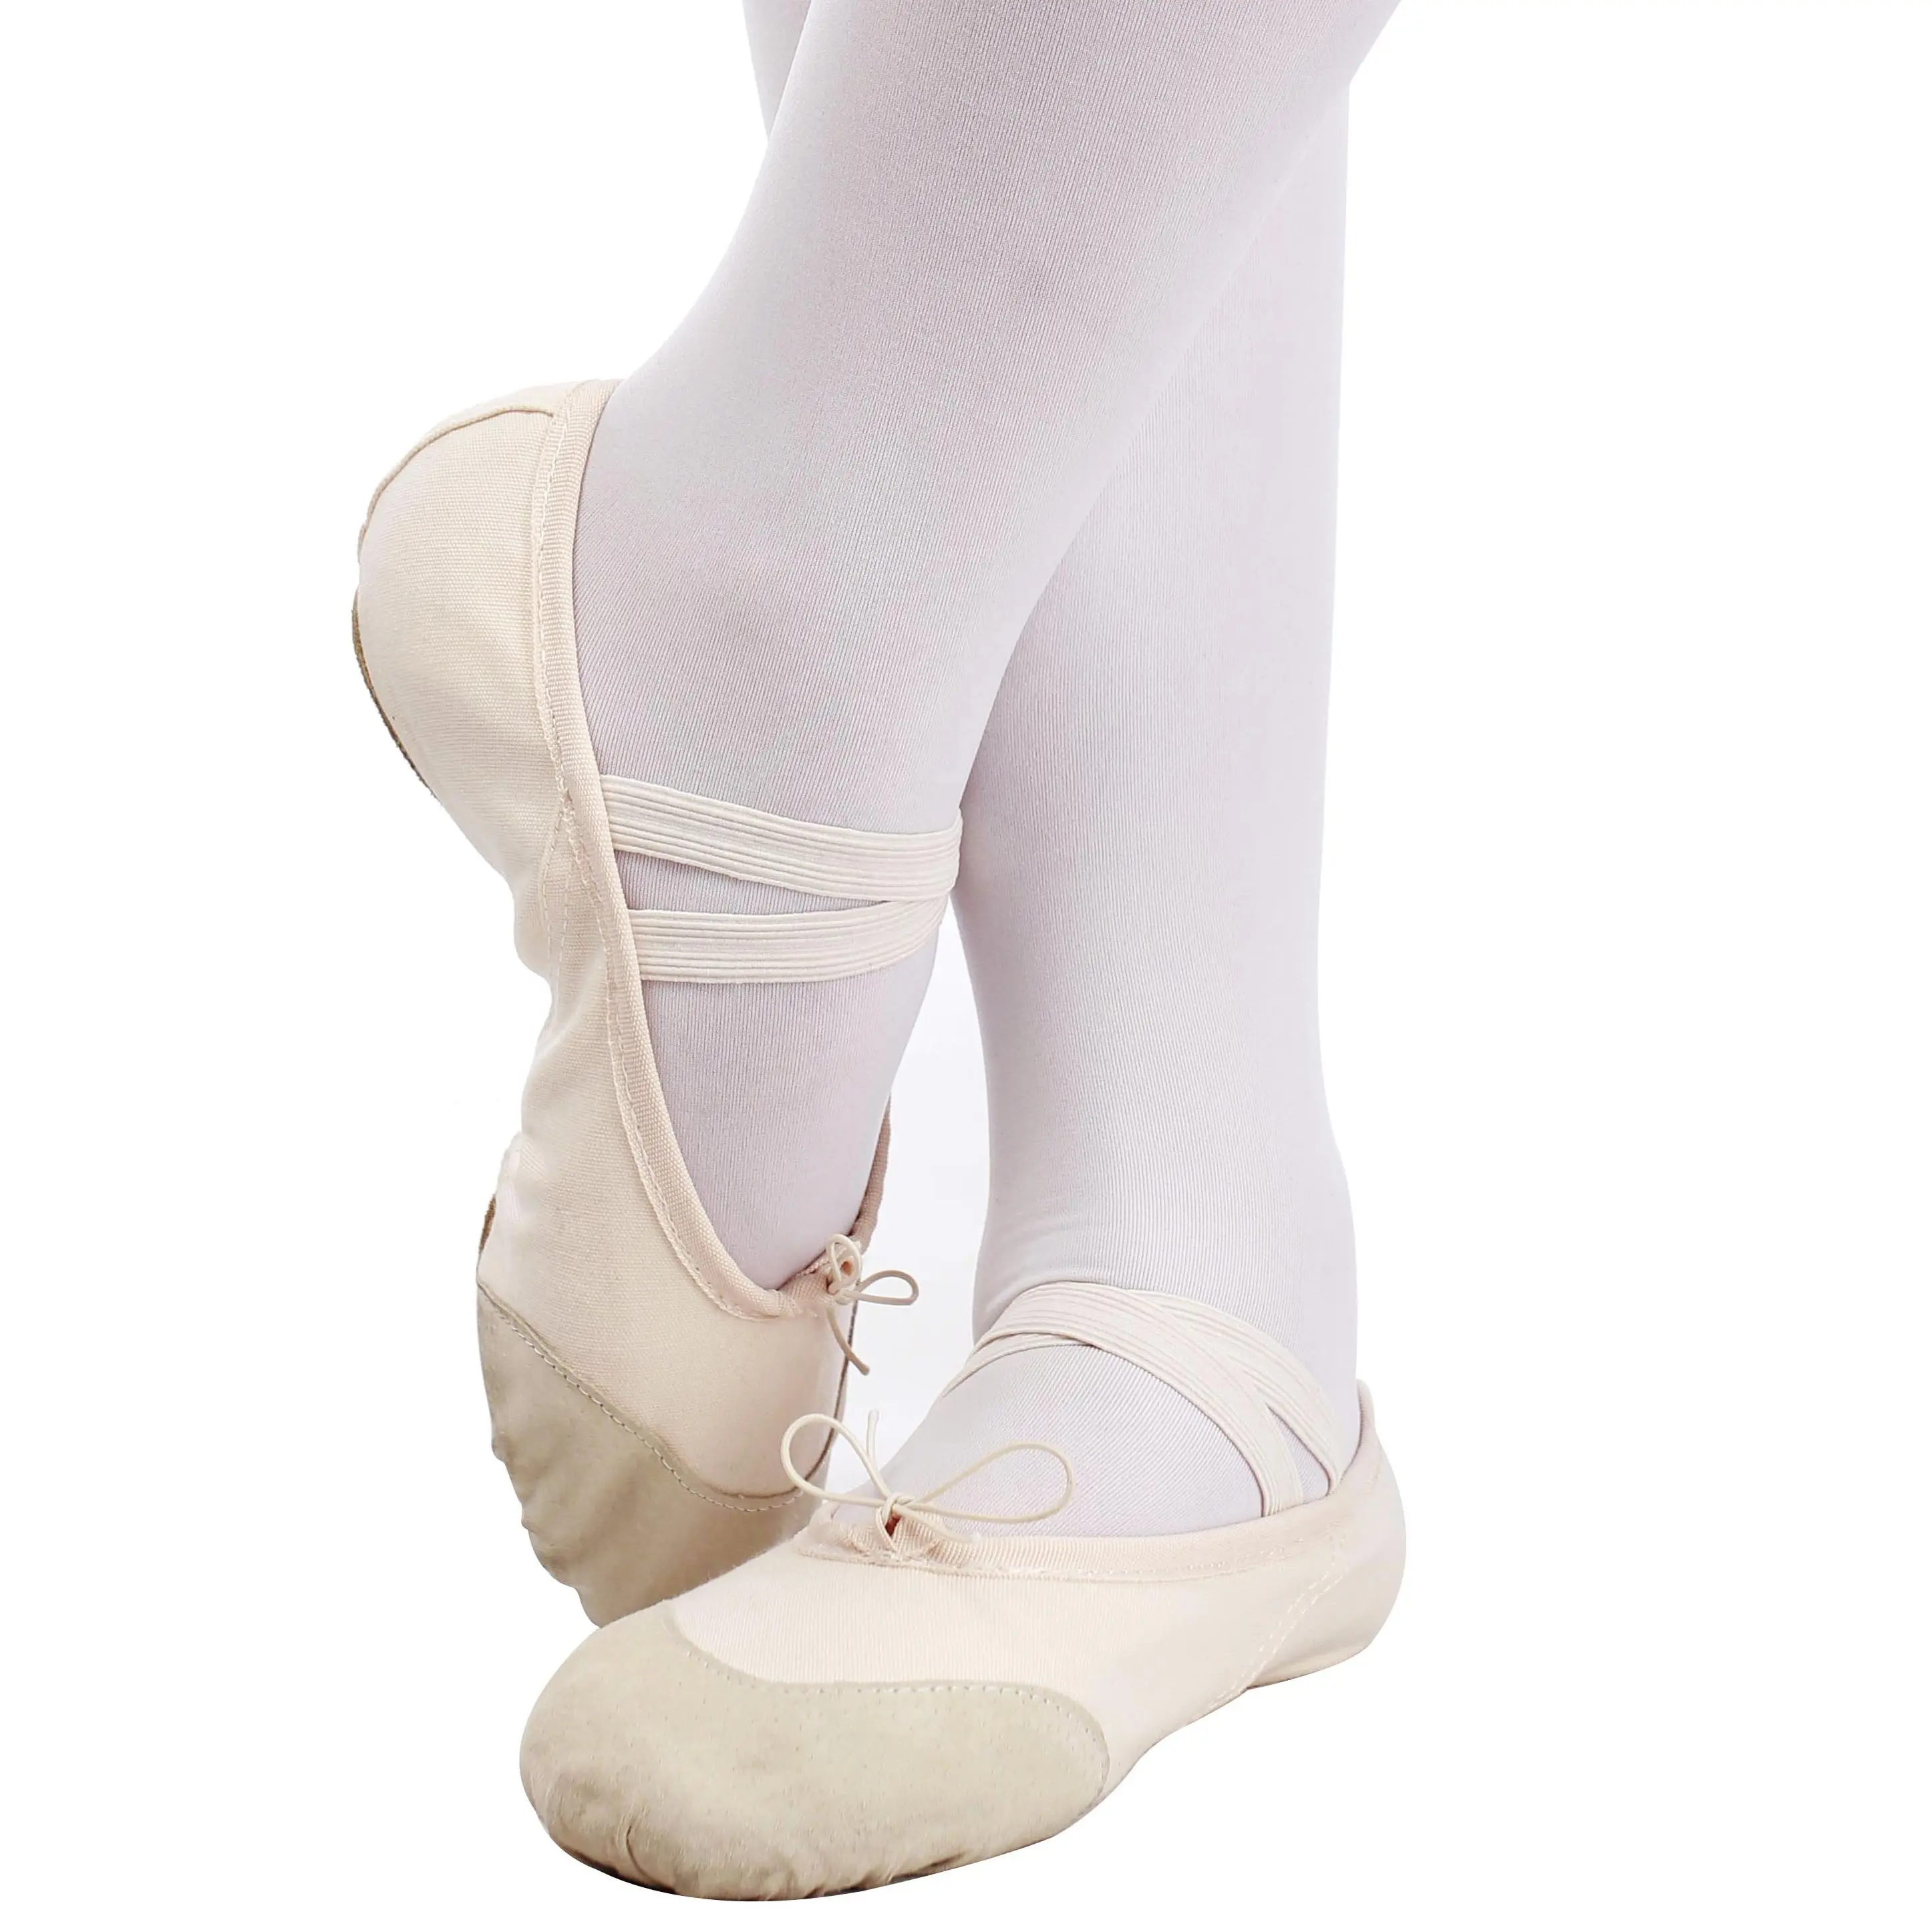 Wholesale dance wear shoes supplier dance ballet class use adults women ballet dance shoes